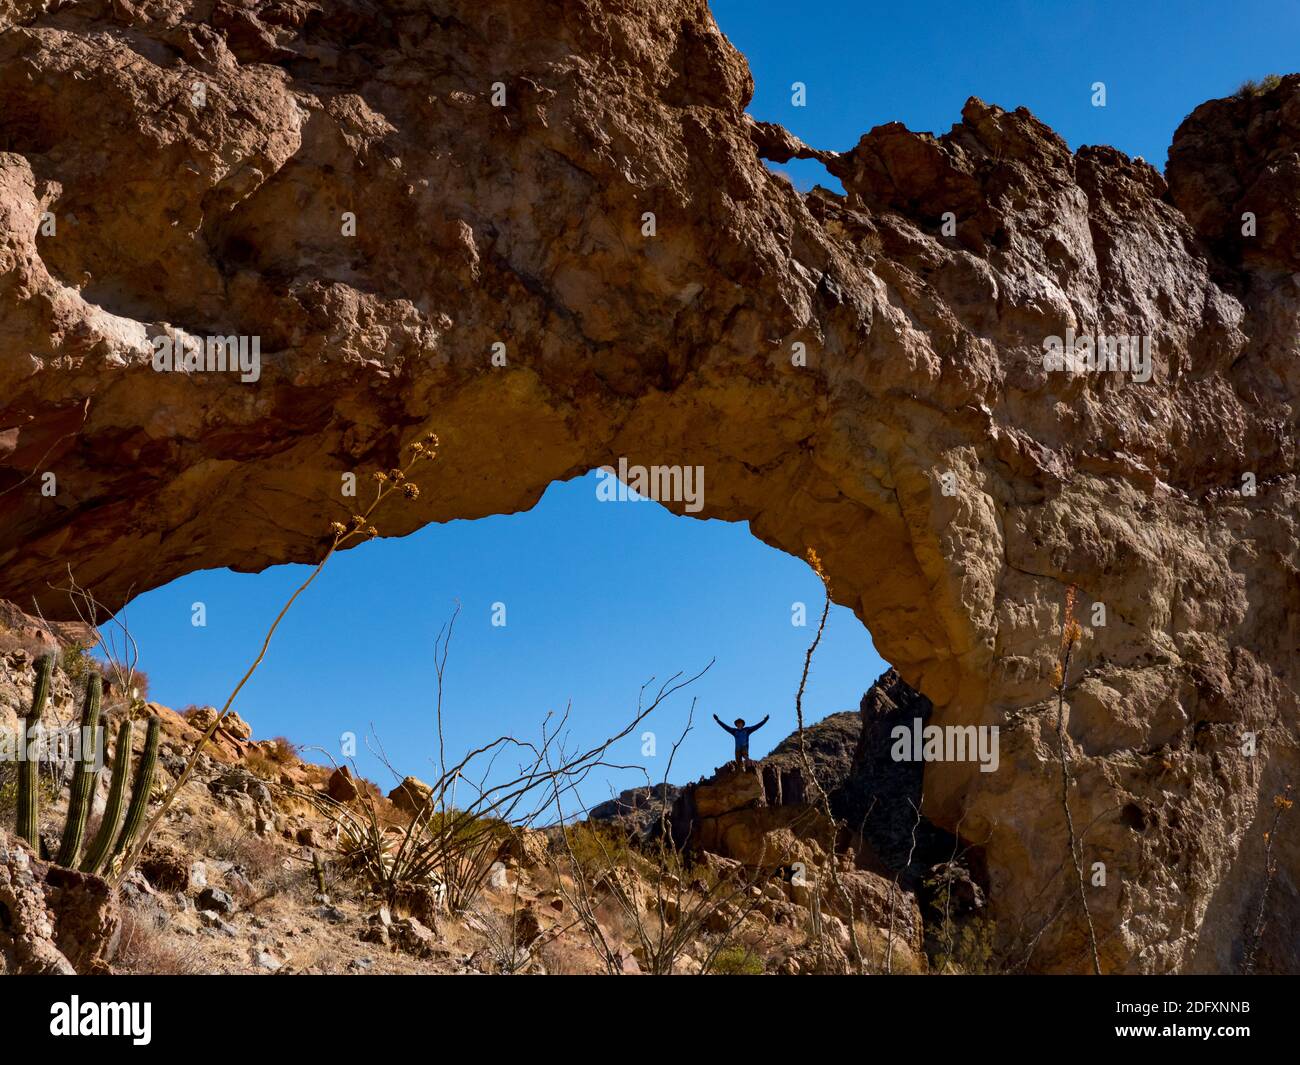 Un randonneur apprécie l'arche naturelle d'Arch Canyon, Organ Pipe Cactus National Monument, Arizona, Etats-Unis Banque D'Images